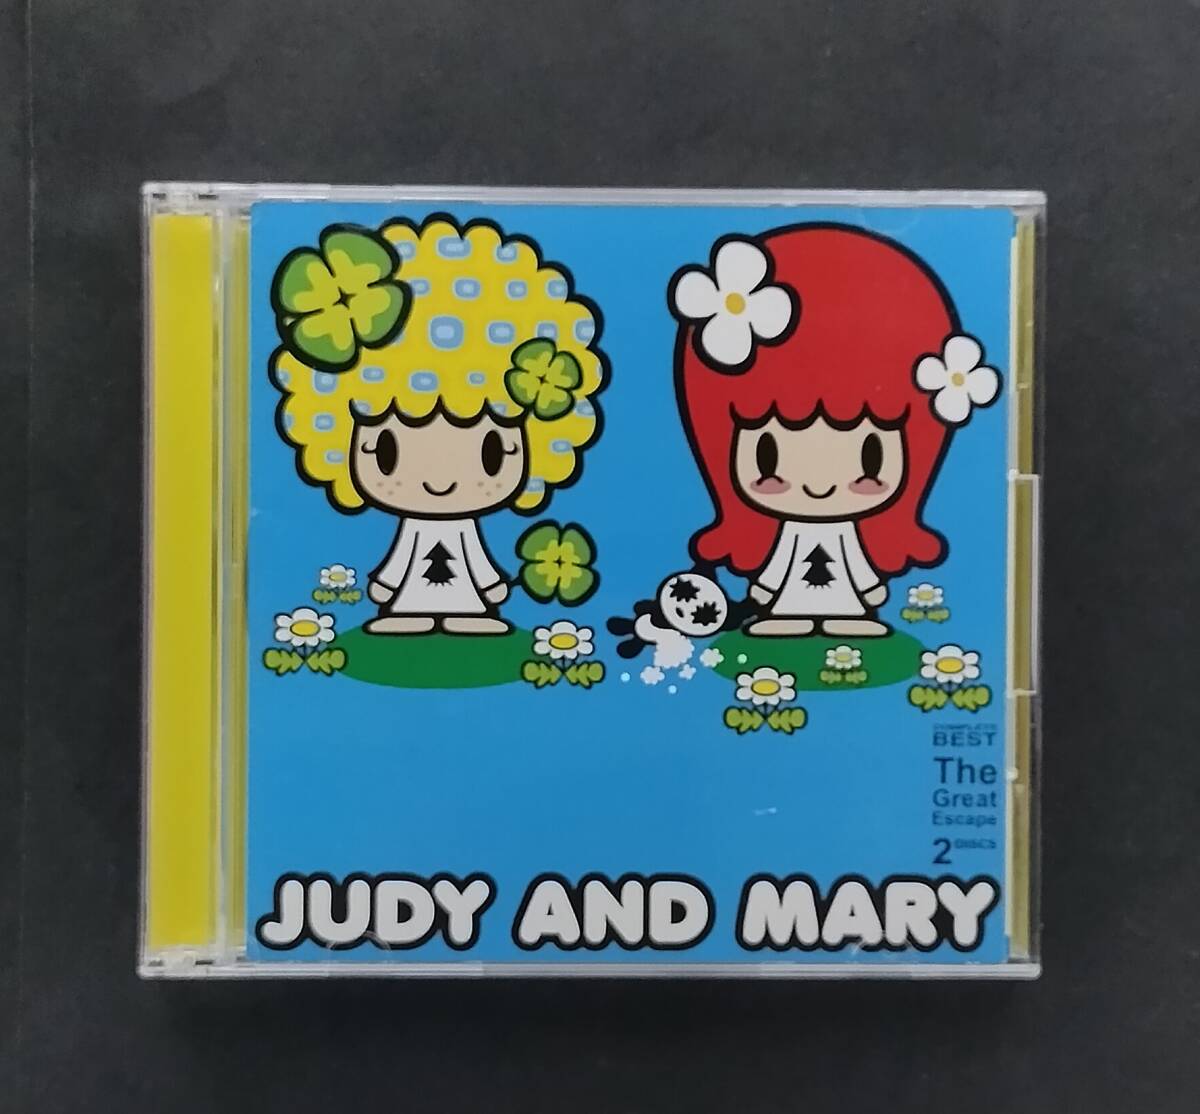 万1 13017 The Great Escape ~COMPLETE BEST~ (初回スペシャルボックス仕様) (2CD) /JUDY AND MARY ジュディ・アンド・マリーの画像3